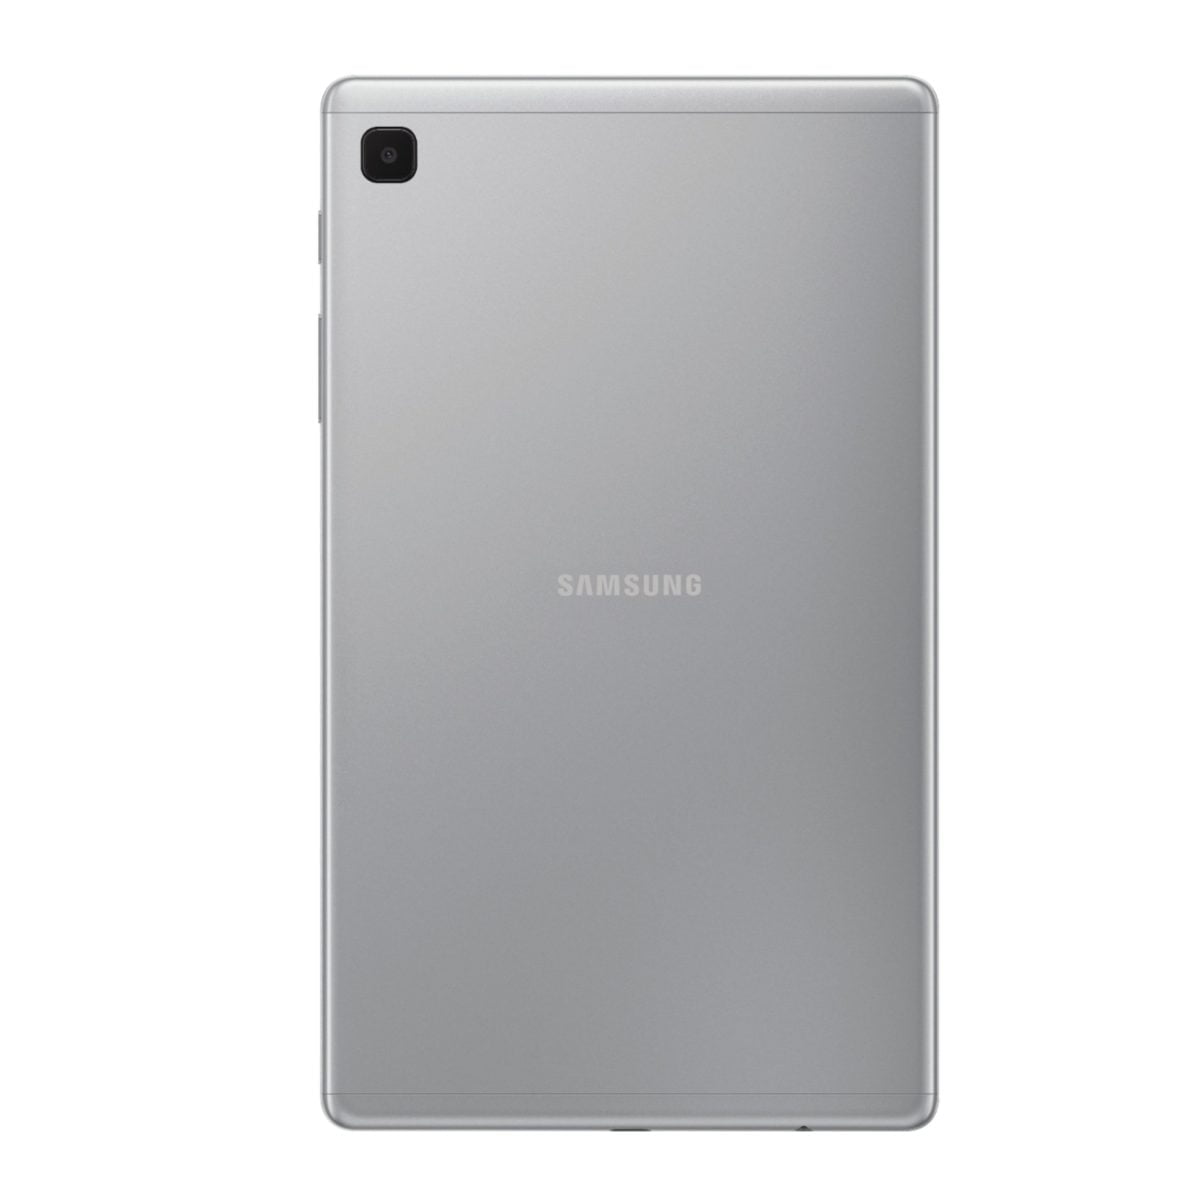 6464588Cv11D Scaled سامسونج &Lt;H1&Gt;سامسونج جالاكسي تاب A7 لايت 32 جيجا بايت - فضي&Lt;/H1&Gt;
تعرف على الجهاز الذي ستحبه عائلتك بأكملها: Samsung Galaxy Tab A7 Lite ، الجهاز اللوحي المصنوع لمشاركته. بفضل شاشته المدمجة مقاس 8.7 بوصات ، يعد Galaxy Tab A7 Lite بحجم مثالي للترفيه أثناء التنقل. تم تصميم إطاره المعدني القوي ليتم إحضاره من غرفة المعيشة إلى عطلتك الشاطئية ، أو أينما تريد أن تأخذه. يأتي Galaxy Tab A7 Lite مزودا بإمكانية الوصول إلى ساعات من Youtube Premium و Samsung Tv الخالي من الإعلانات دون أي رسوم إضافية حتى تتمكن من إبقاء العائلة سعيدة دون انقطاع مزعج. بالإضافة إلى ذلك ، مع معالج قوي للبث السريع والكثير من التخزين لملفاتك المفضلة ، يبسط Galaxy Tab A7 Lite احتياجات الترفيه للجميع تحت سقفك. سامسونج جالاكسي تاب سامسونج جالاكسي تاب A7 لايت 32 جيجا بايت خلوي - فضي